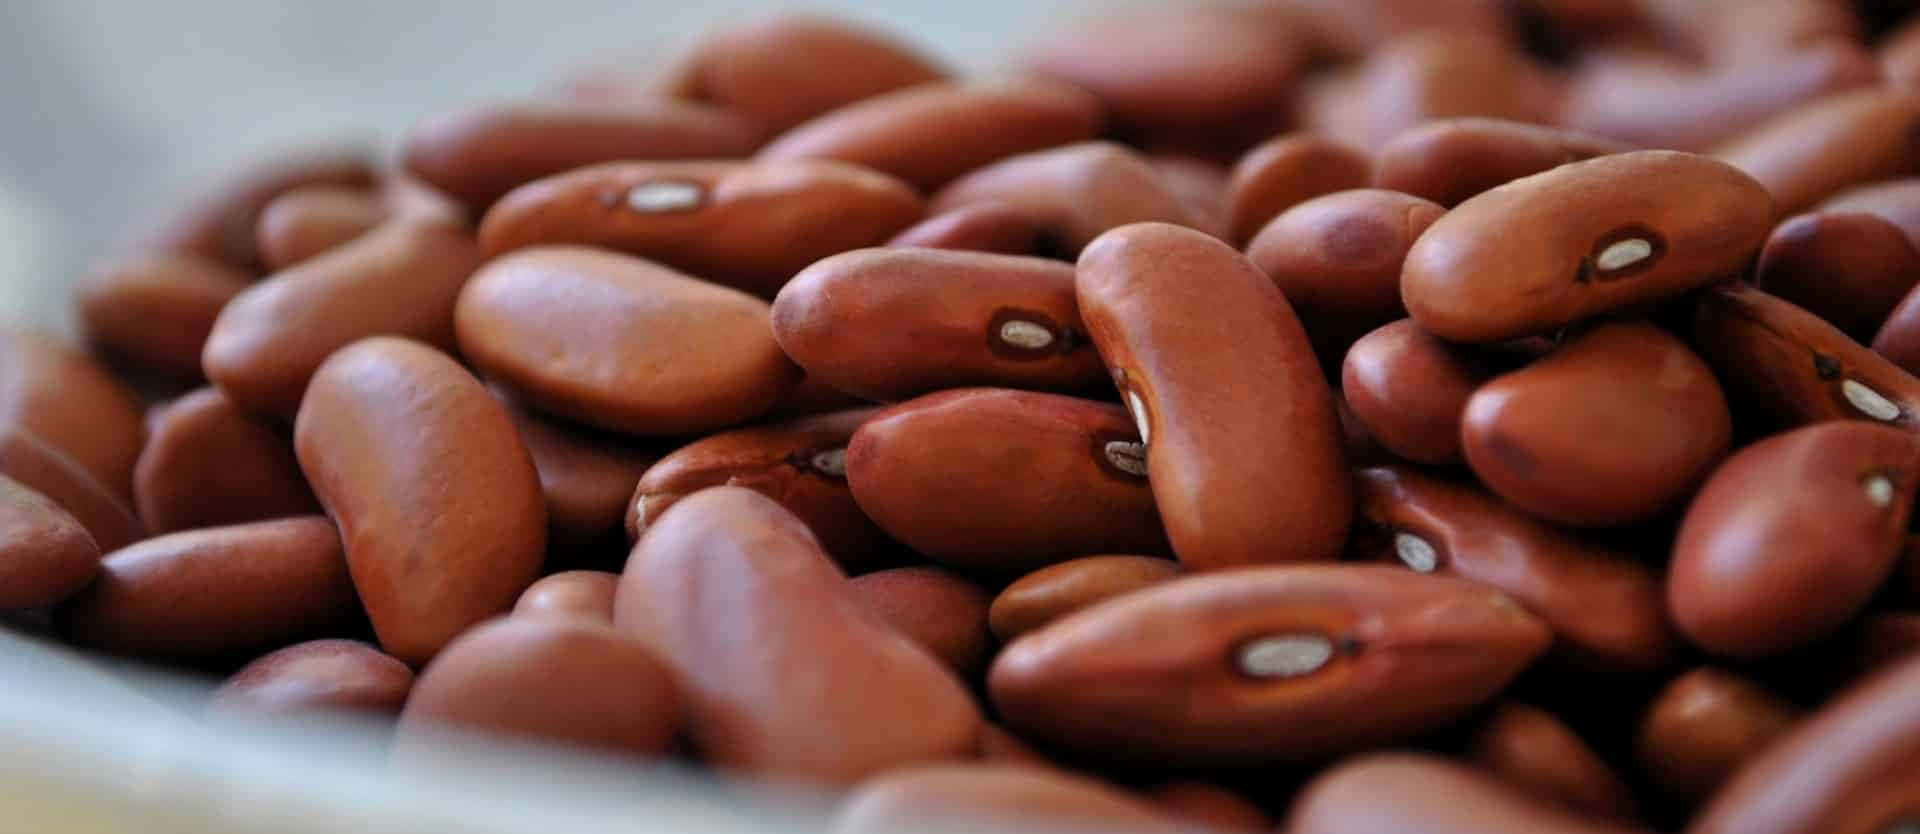 Beans for Breakfast